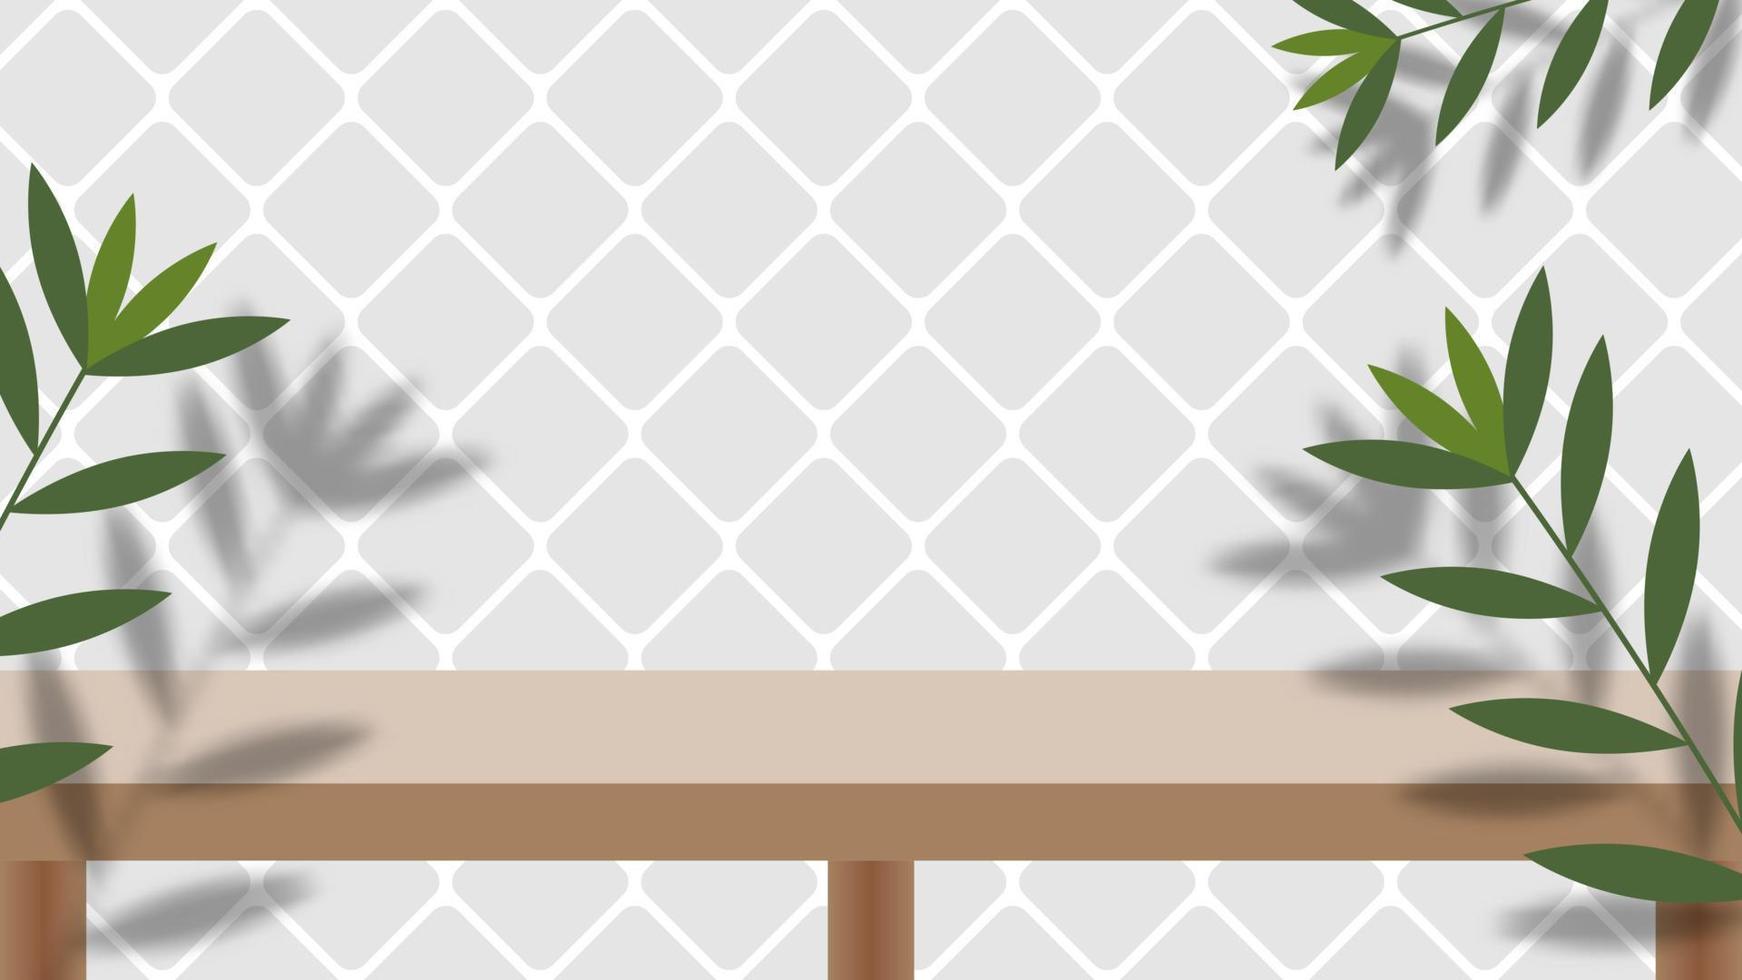 table en bois avec feuille verte nature et ombre sur fond blanc. illustration vectorielle. ep 10. vecteur